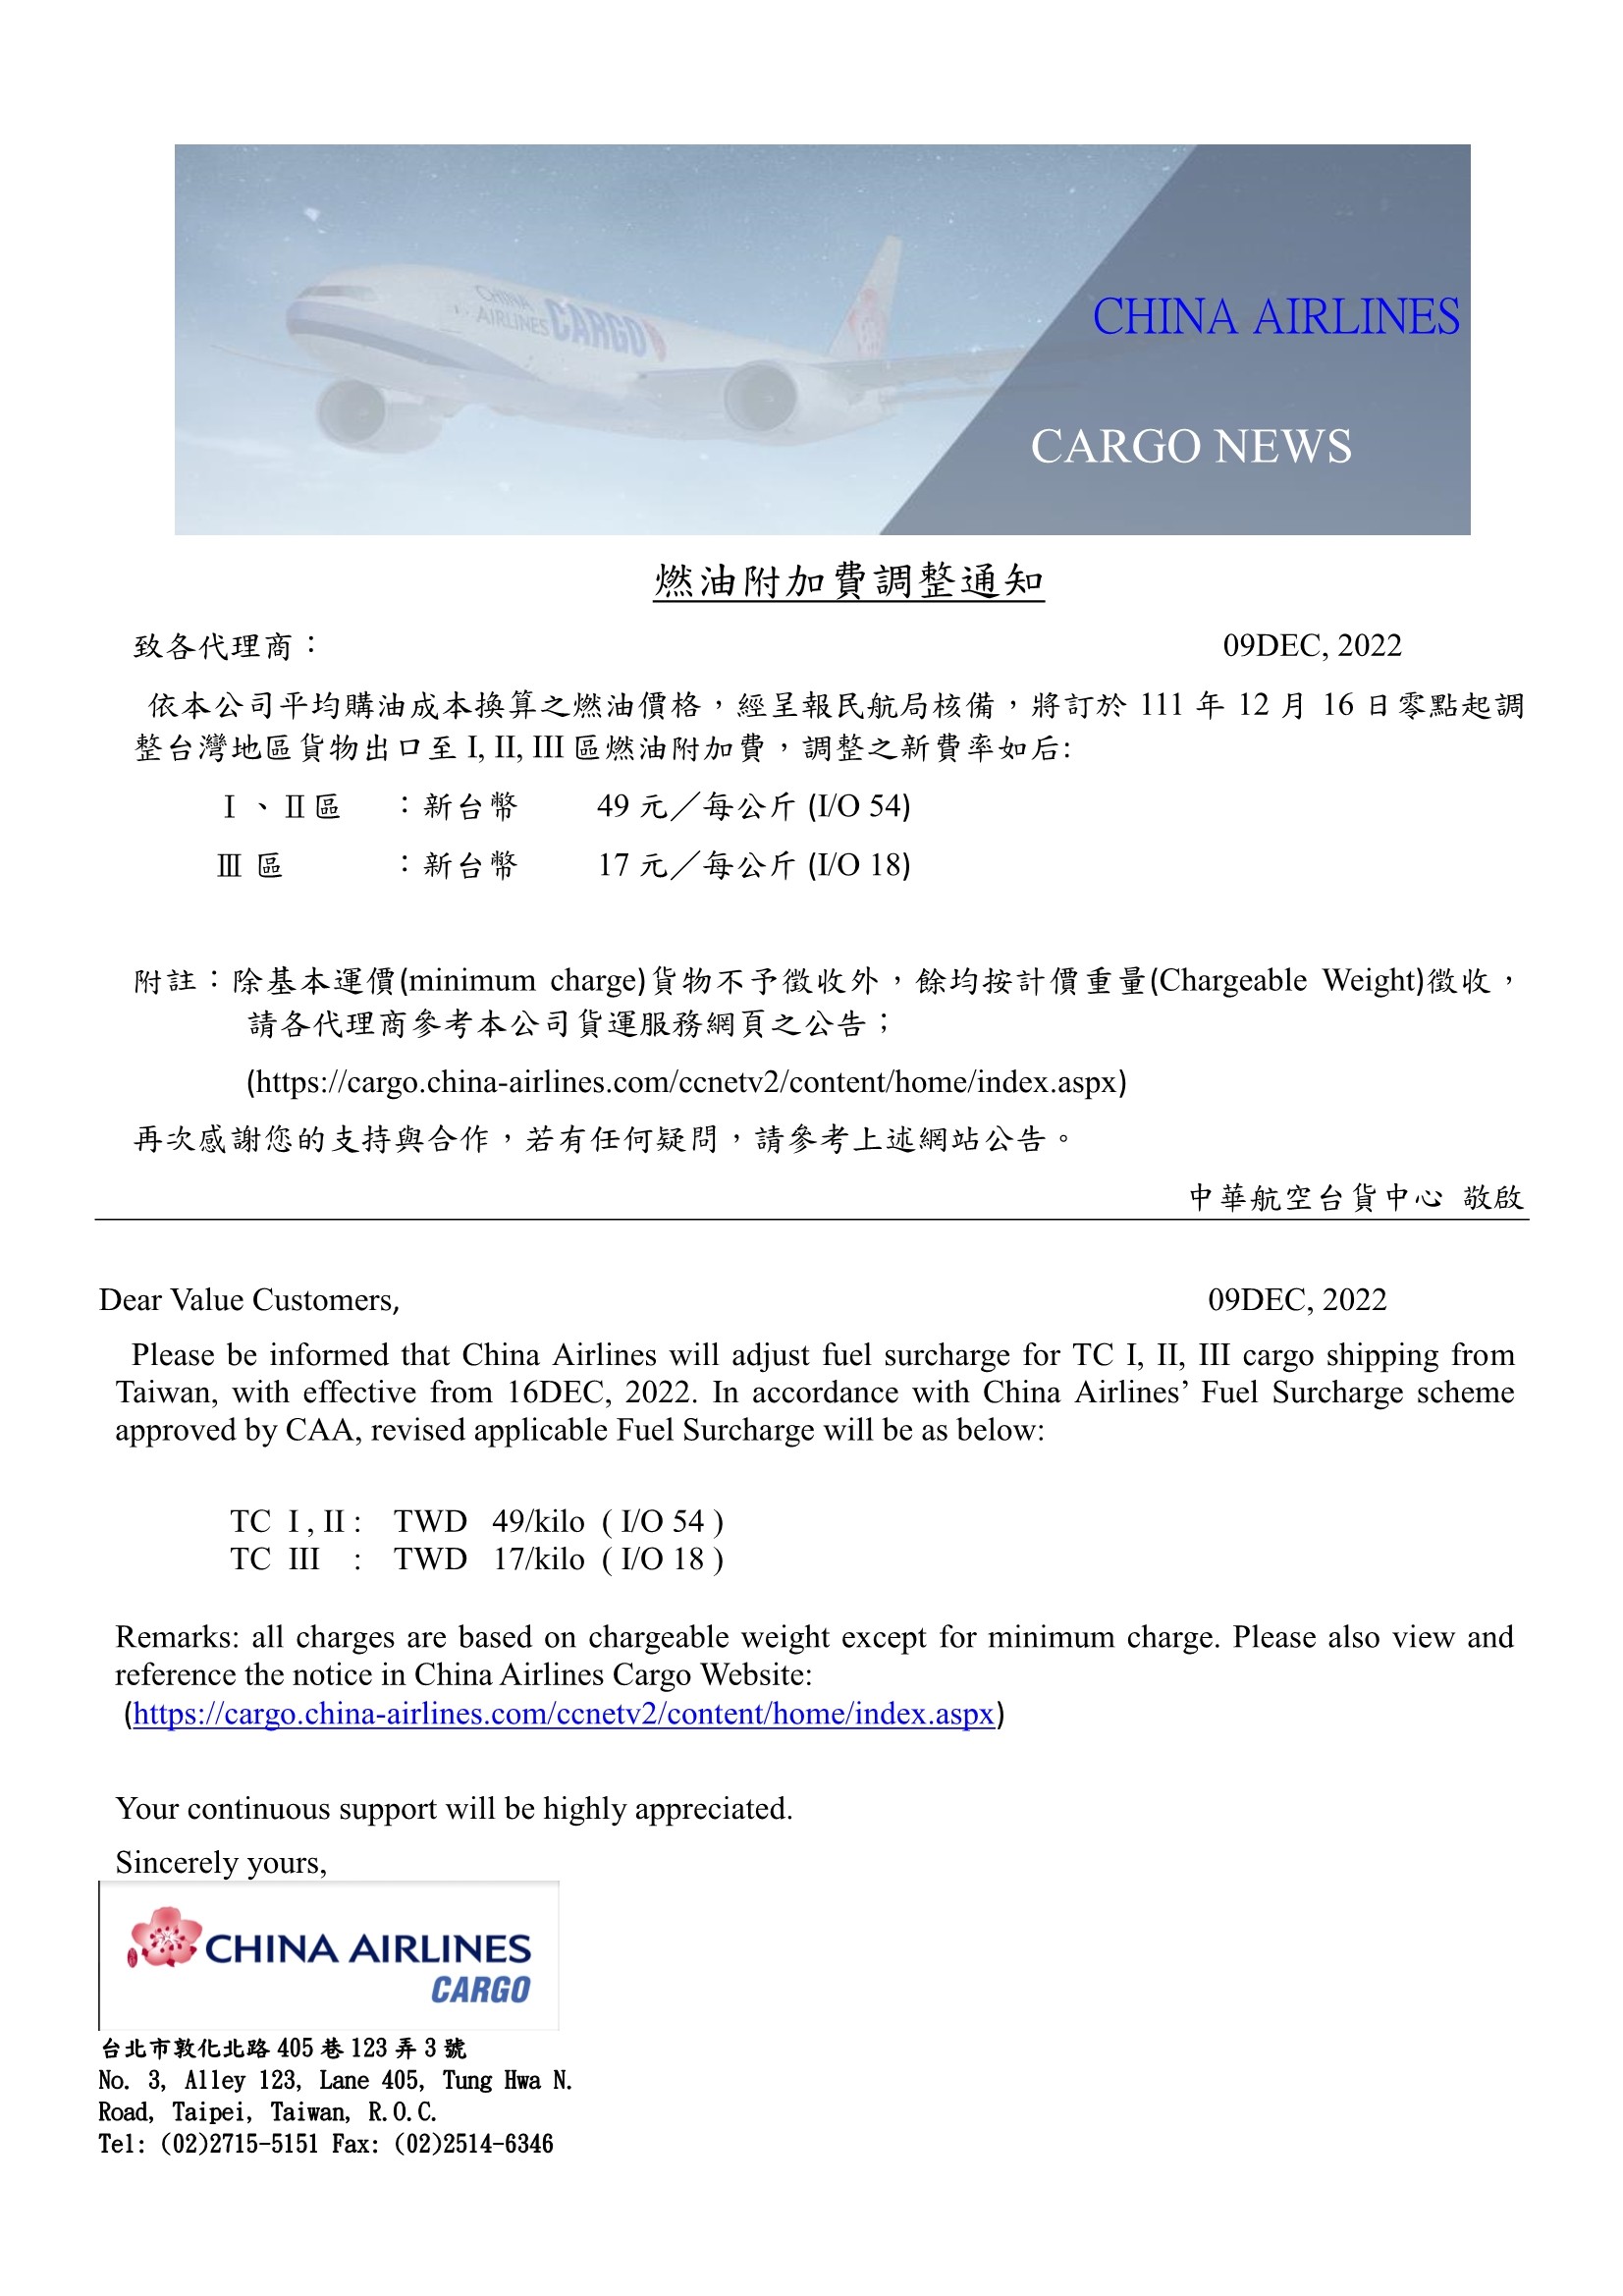 中華航空2022年12月16日台灣區貨運燃油附加費調整公告.jpg